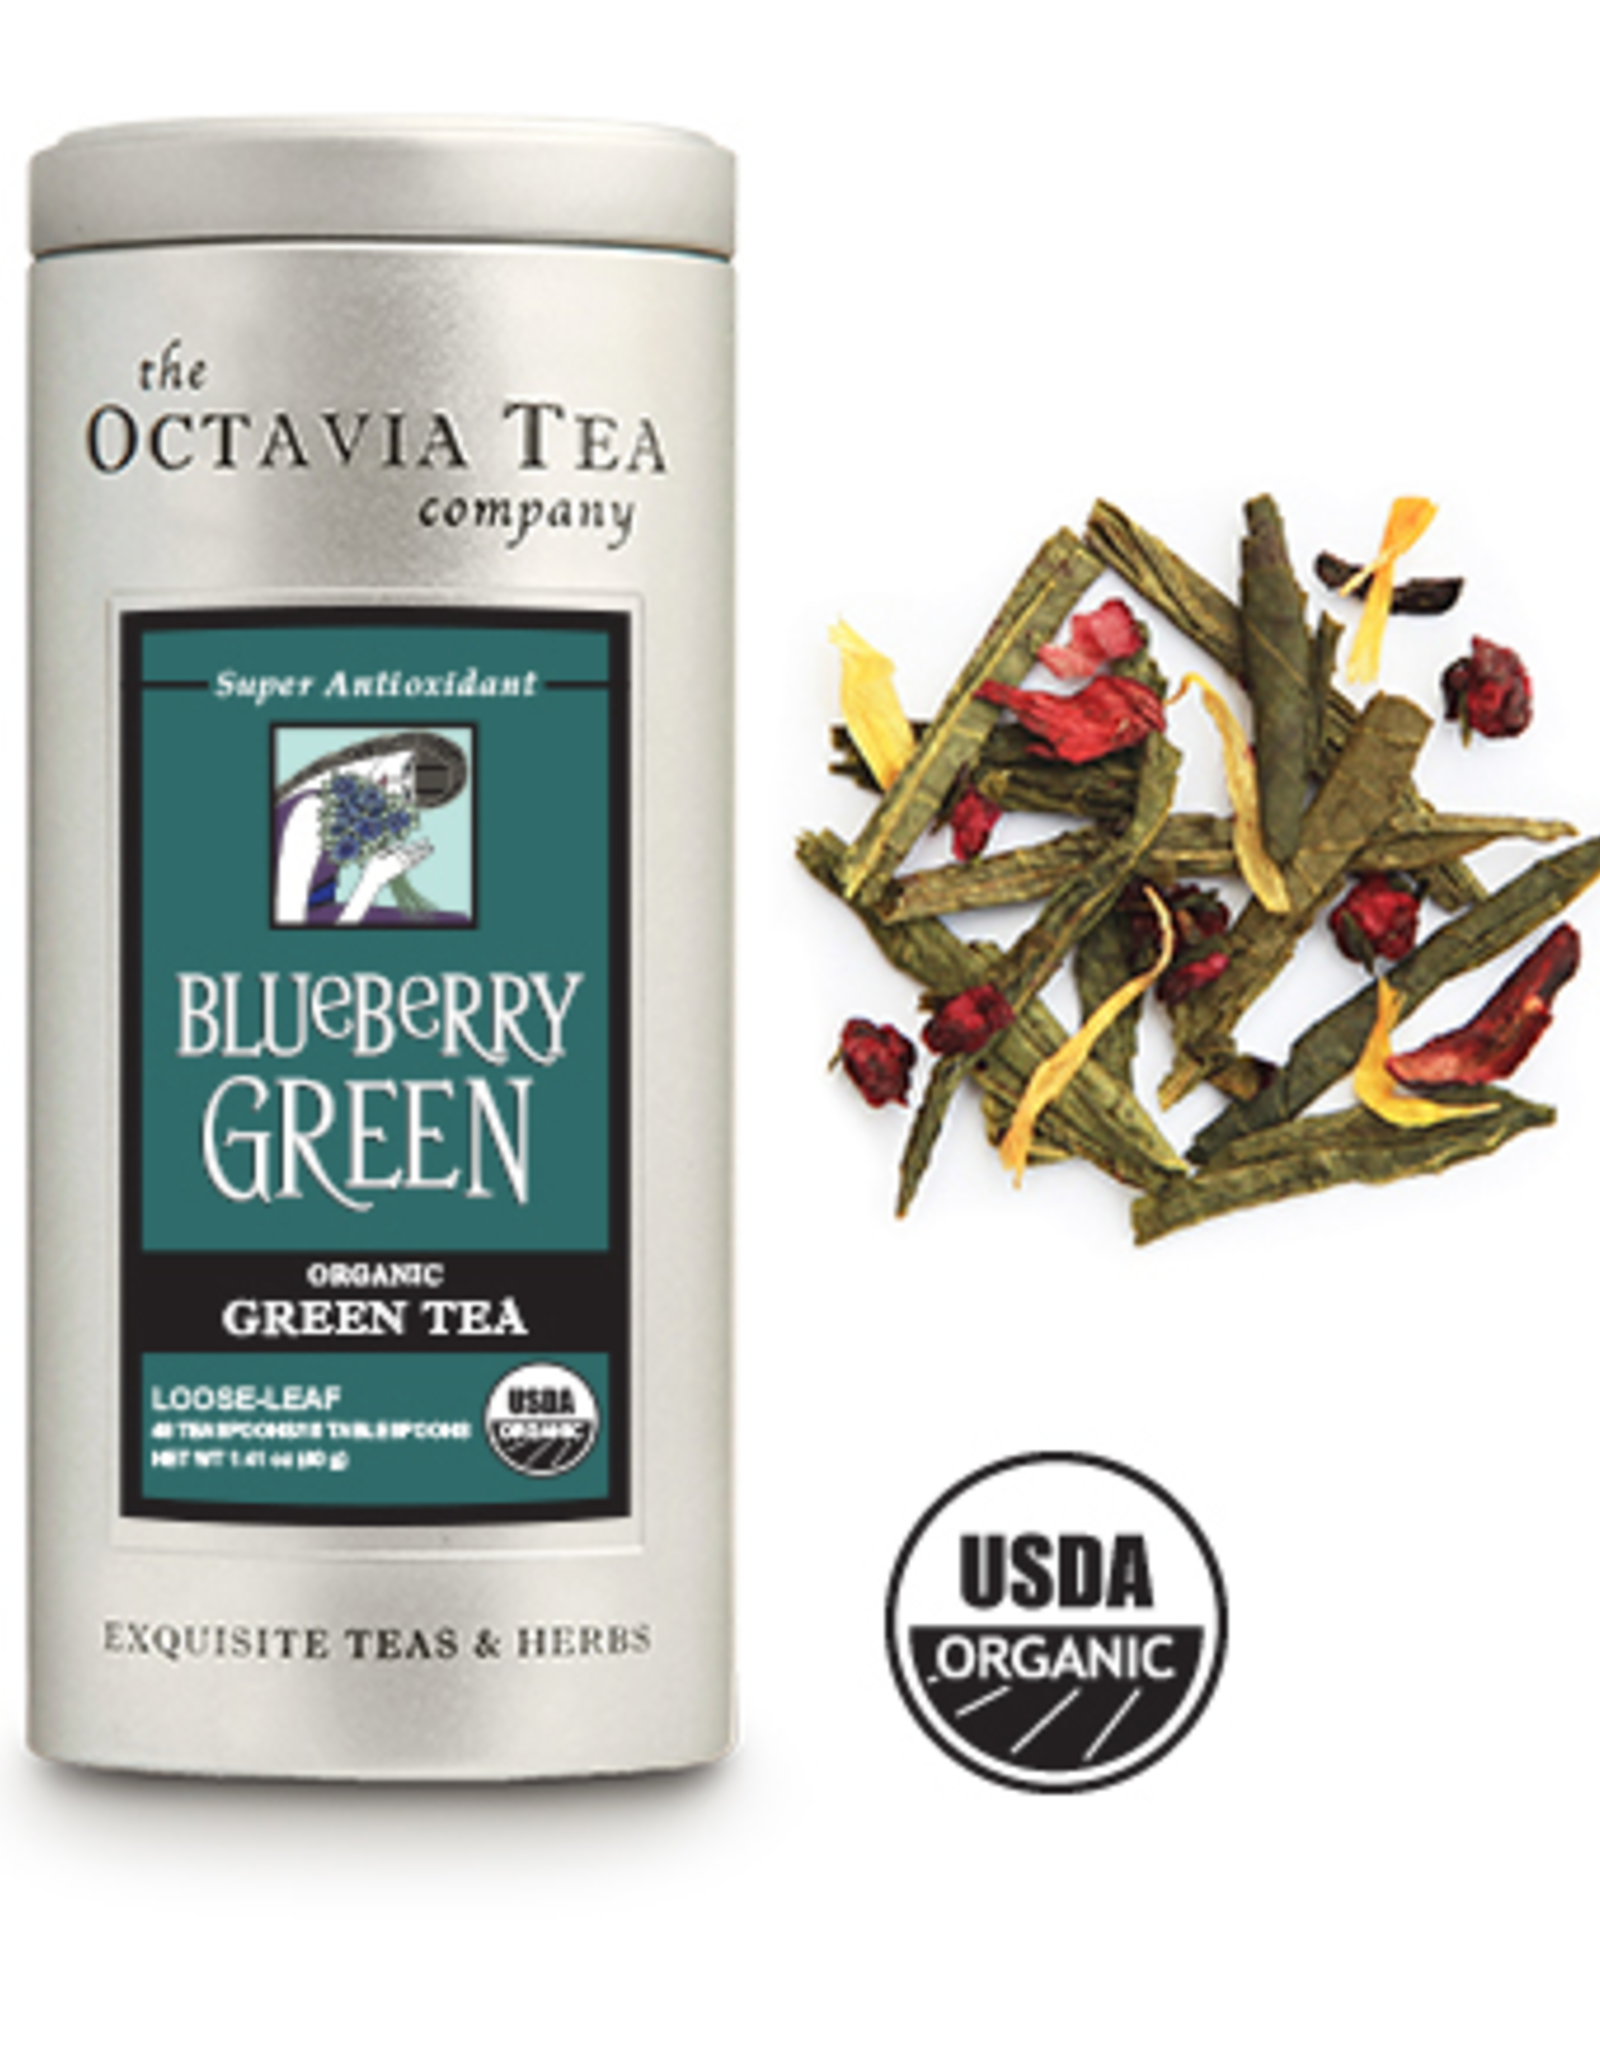 Octavia Tea Company Blueberry Green Tea Tin, Loose Leaf